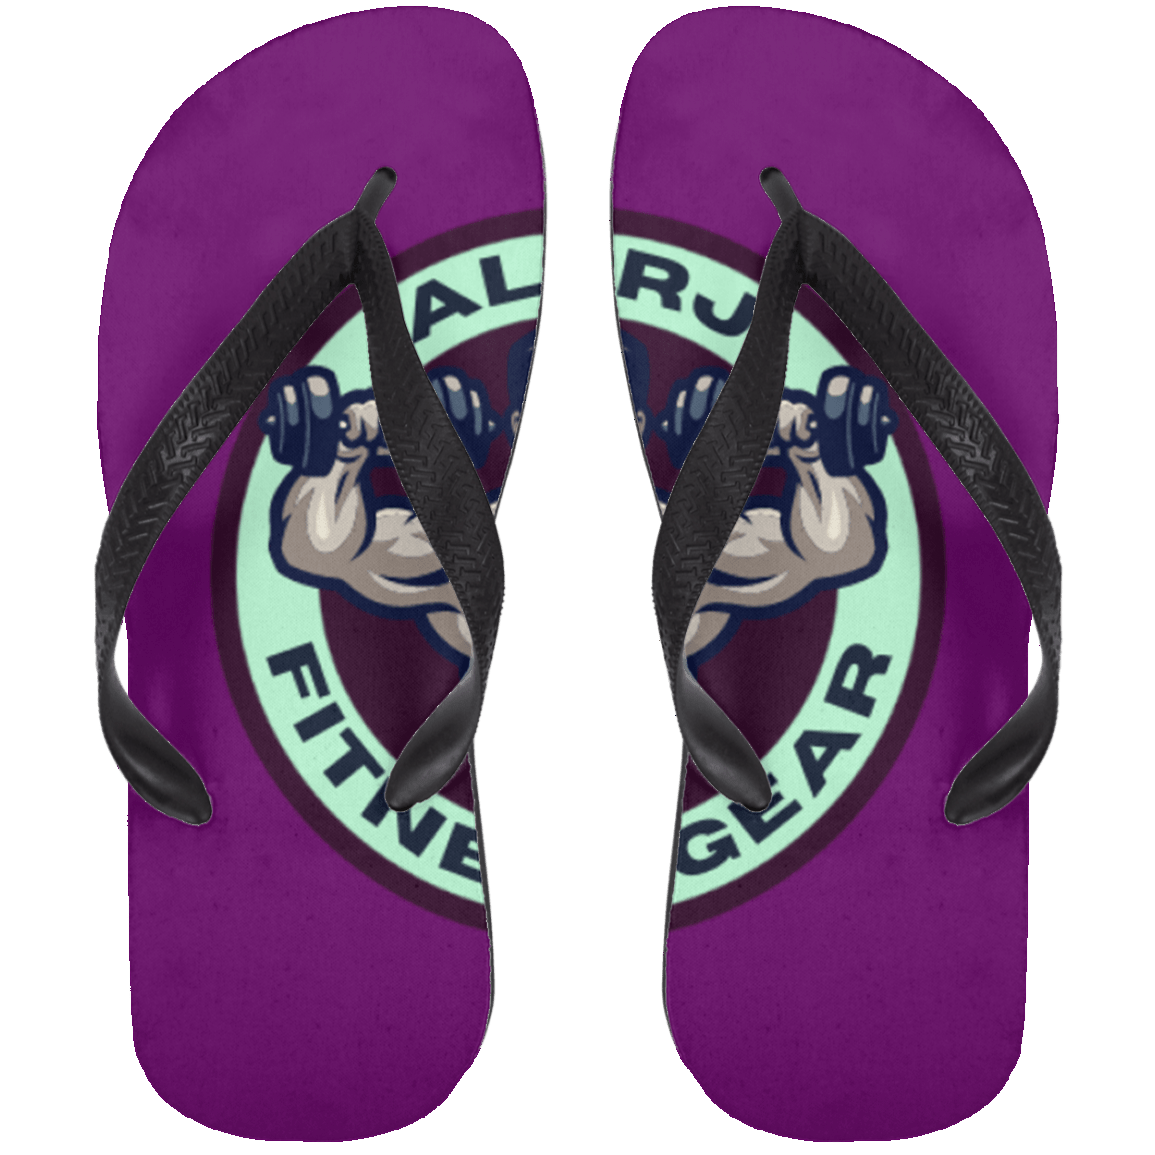 Allrj Pre Stage Flip Flops Purple